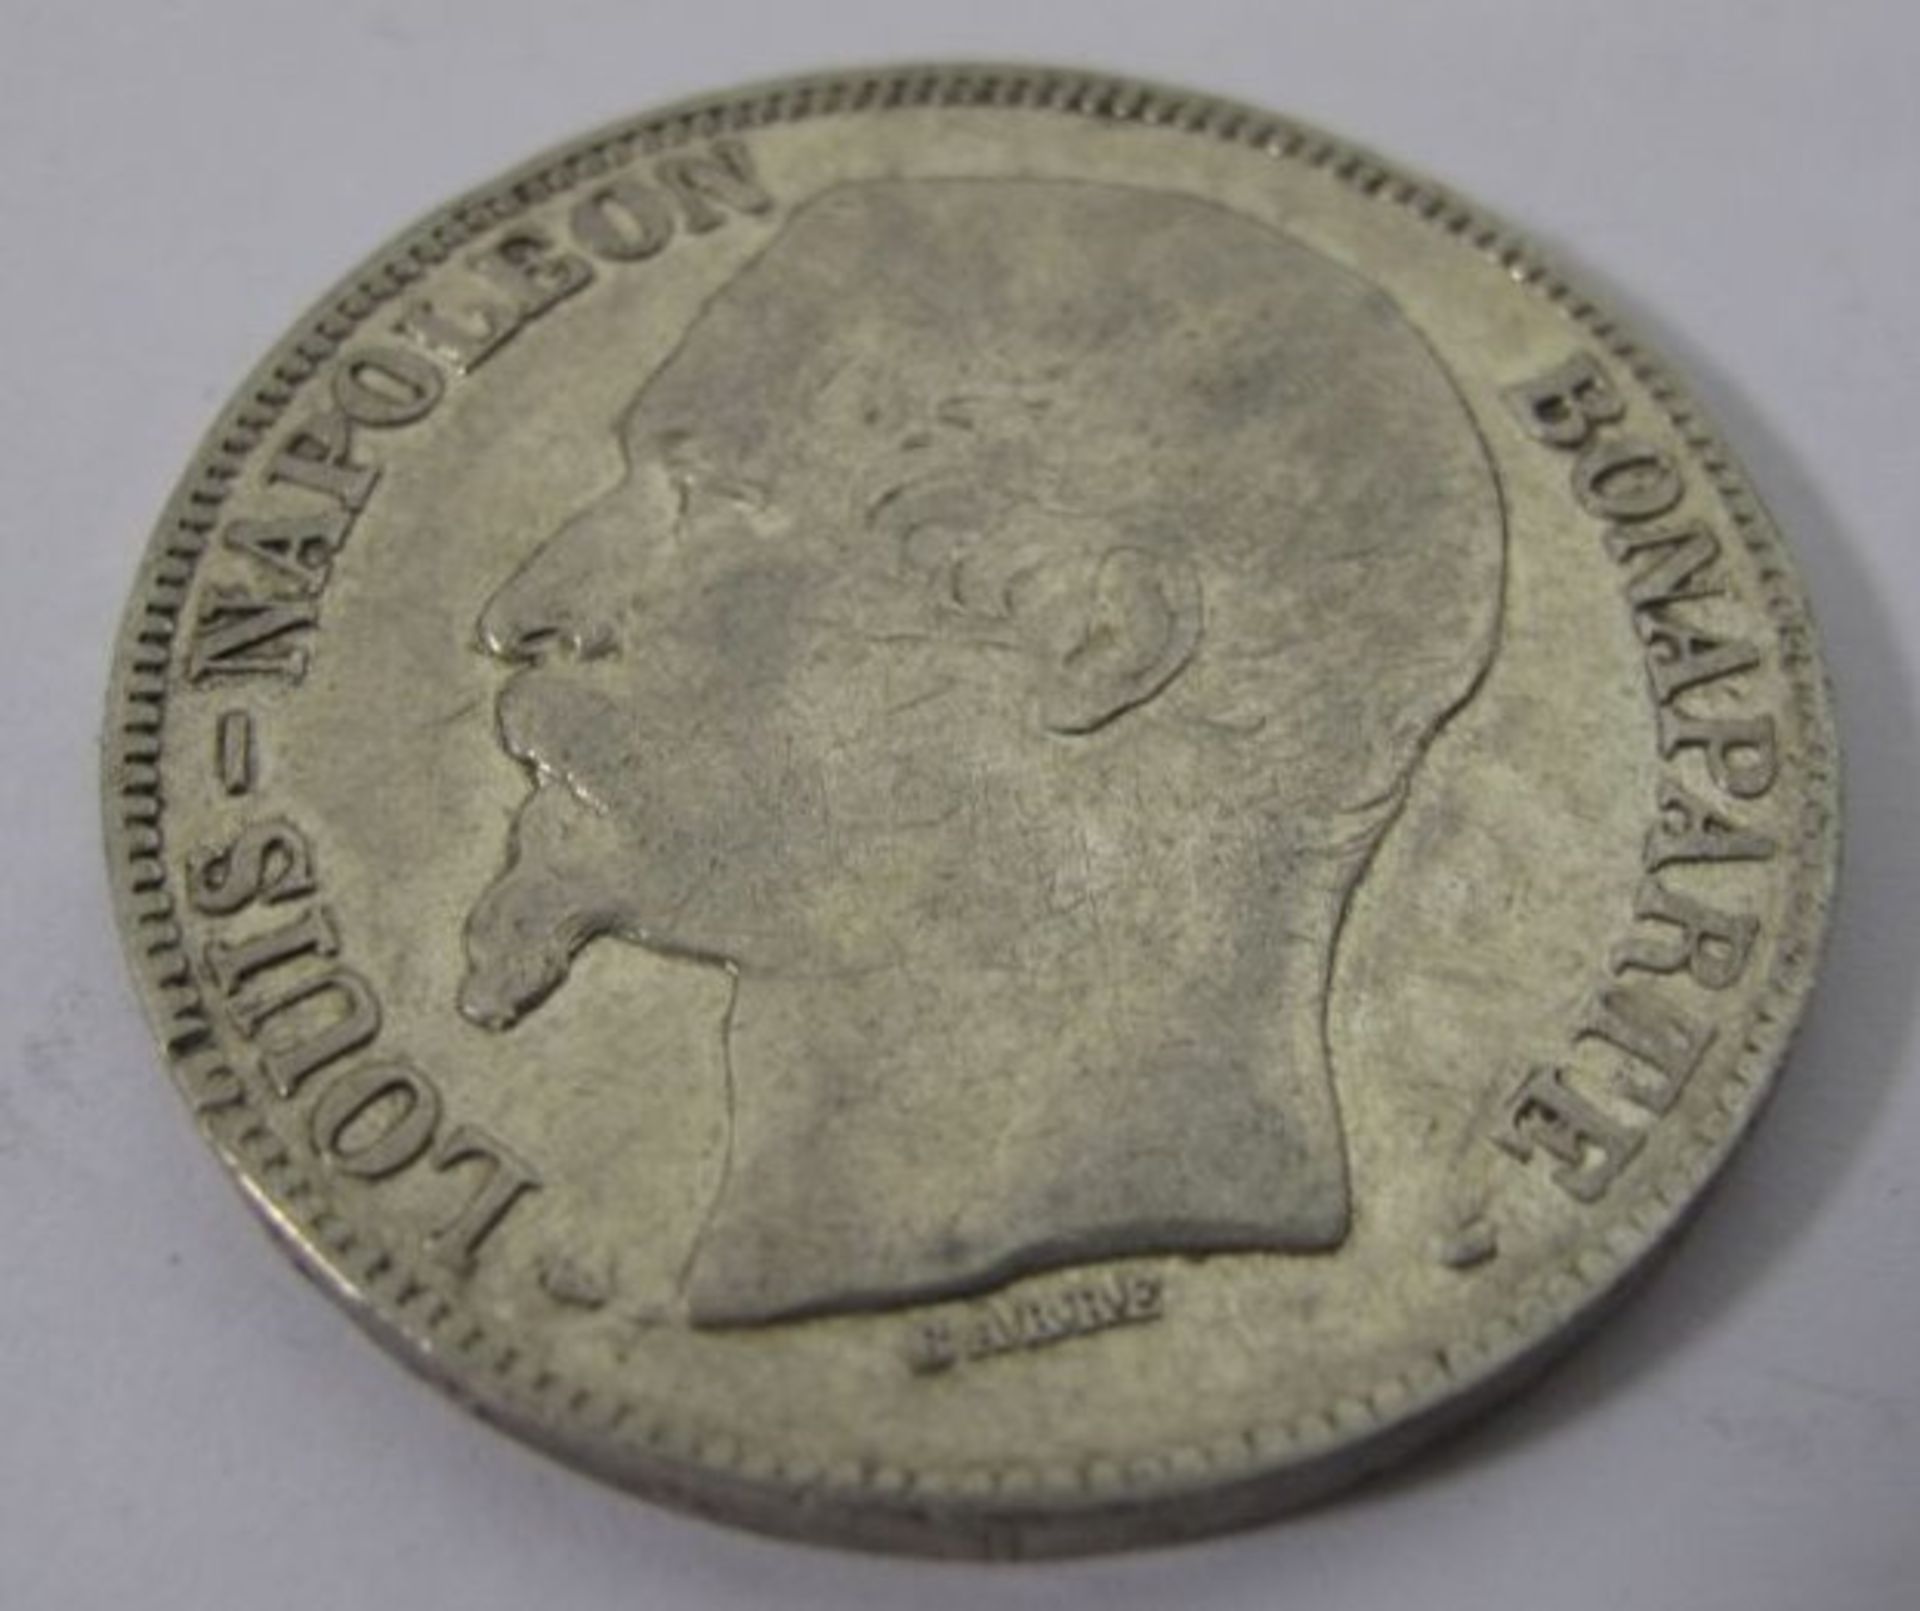 5 Francs 1852 A, Louis Napoleon Bonaparte, Silber, 24,7g, D-3,7cm. - Bild 2 aus 2